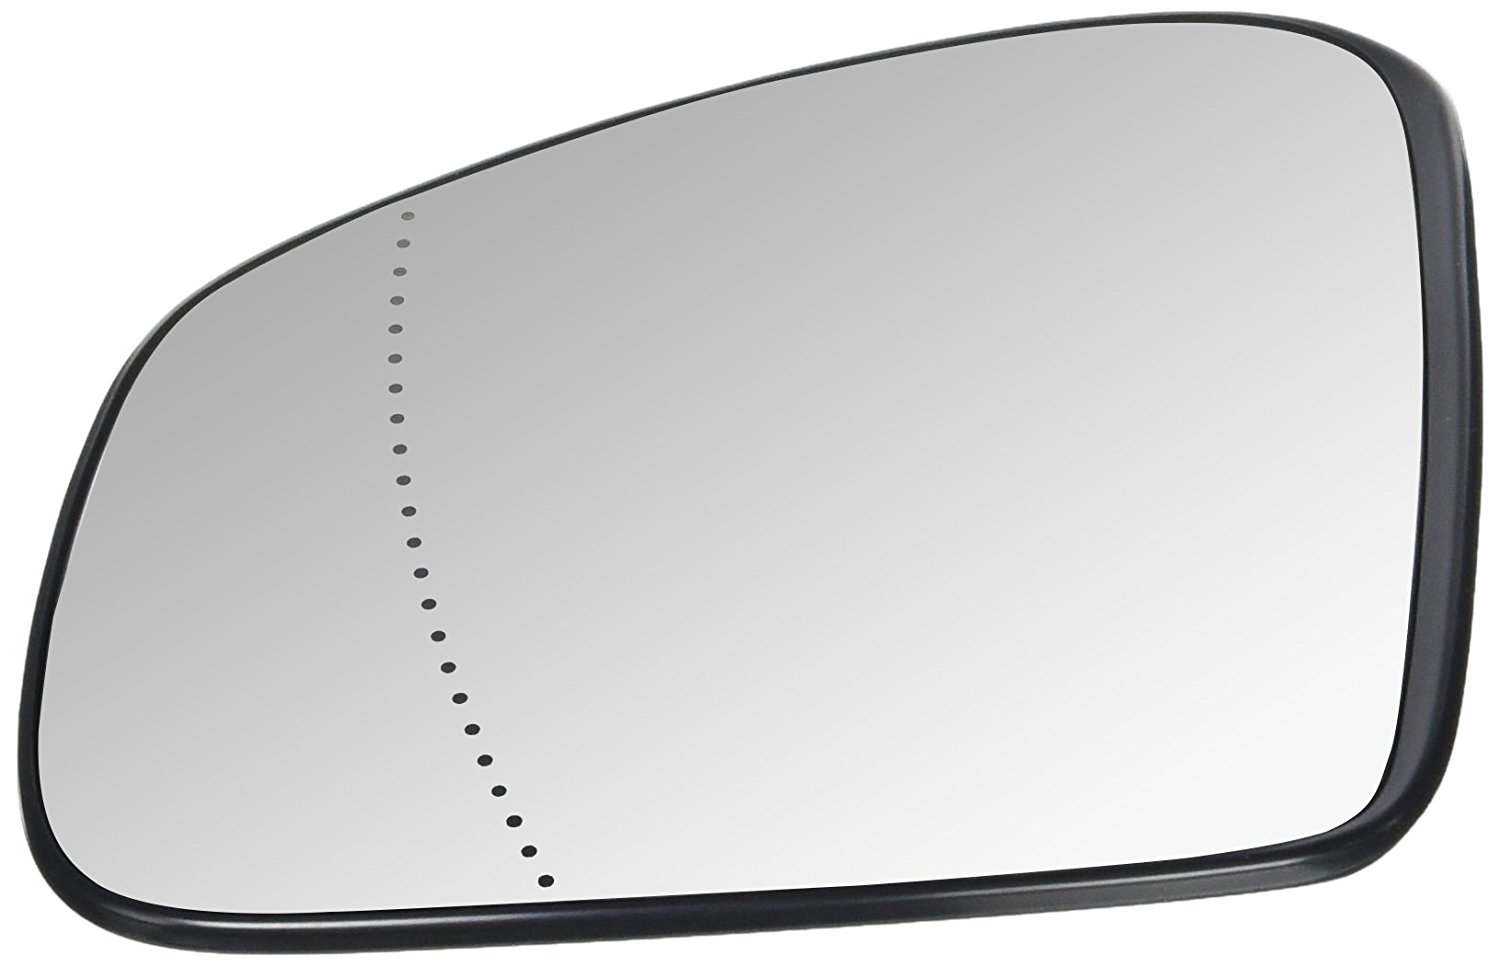 Geam oglinda Renault Twingo, 09.2014-, Smart Forfour (W453), 11.2014- , partea Stanga, culoare sticla crom , sticla asferica, cu incalzire, 963734102R